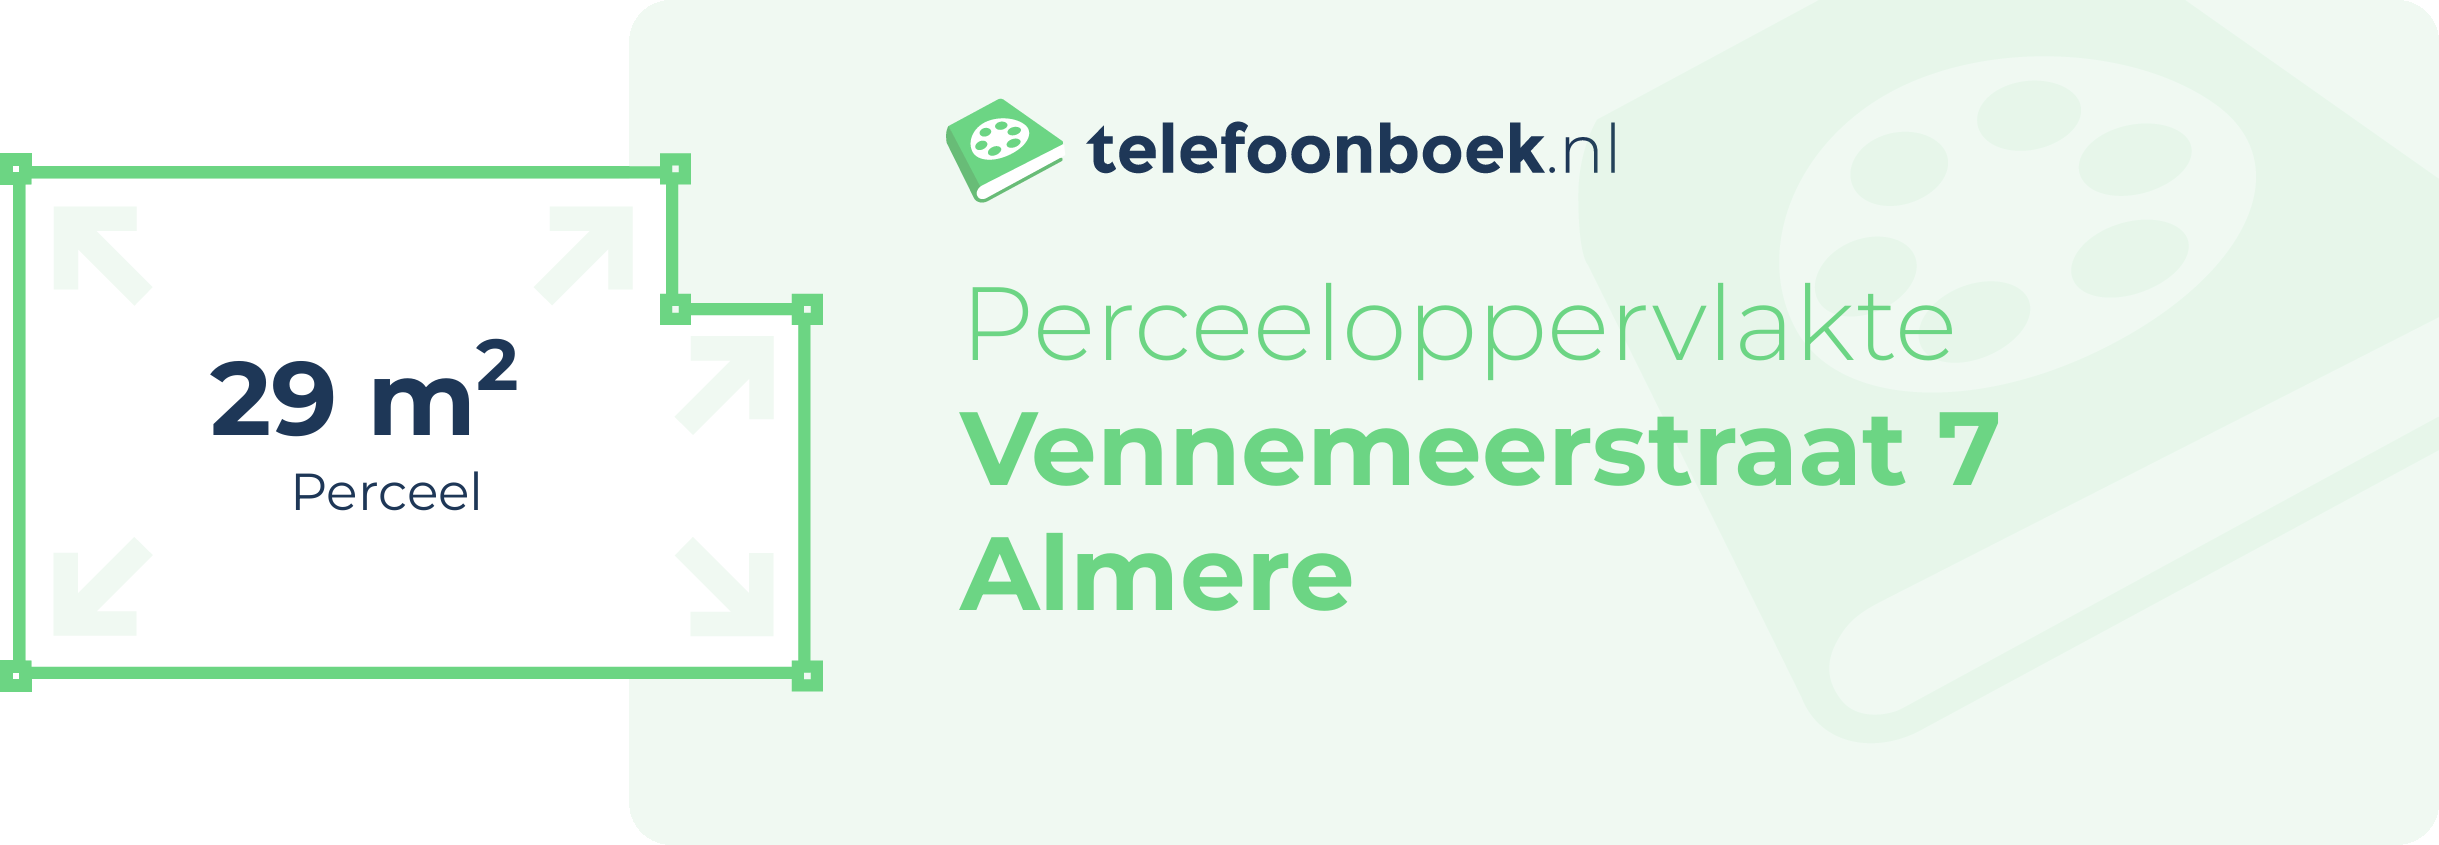 Perceeloppervlakte Vennemeerstraat 7 Almere